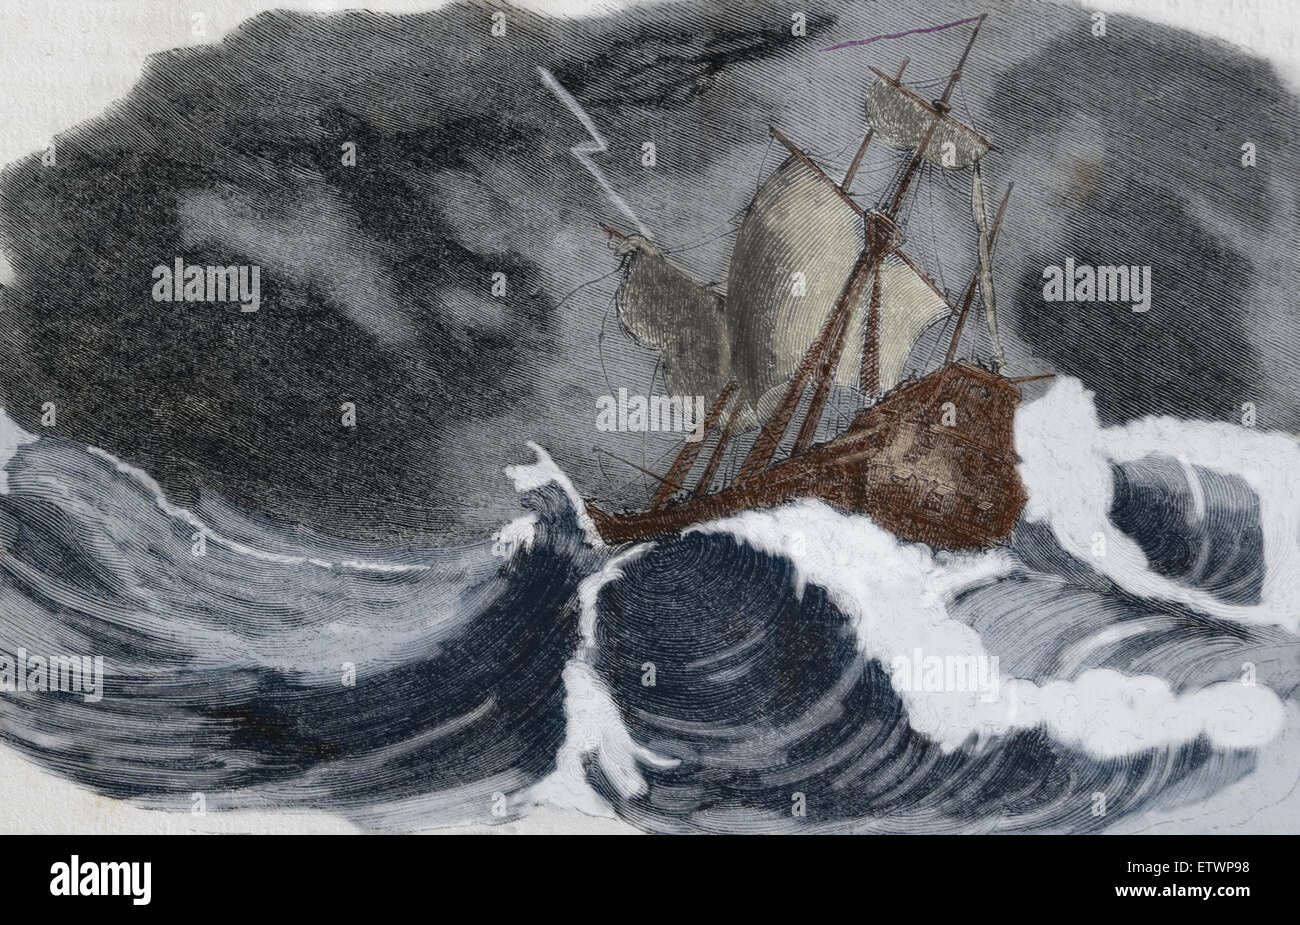 Christopher Columbus (1450-1506). Explorer, Navigation. Entdecker der neuen Welt. Sturm, Küste von Honduras. Gravur. 19. Jh. Stockfoto